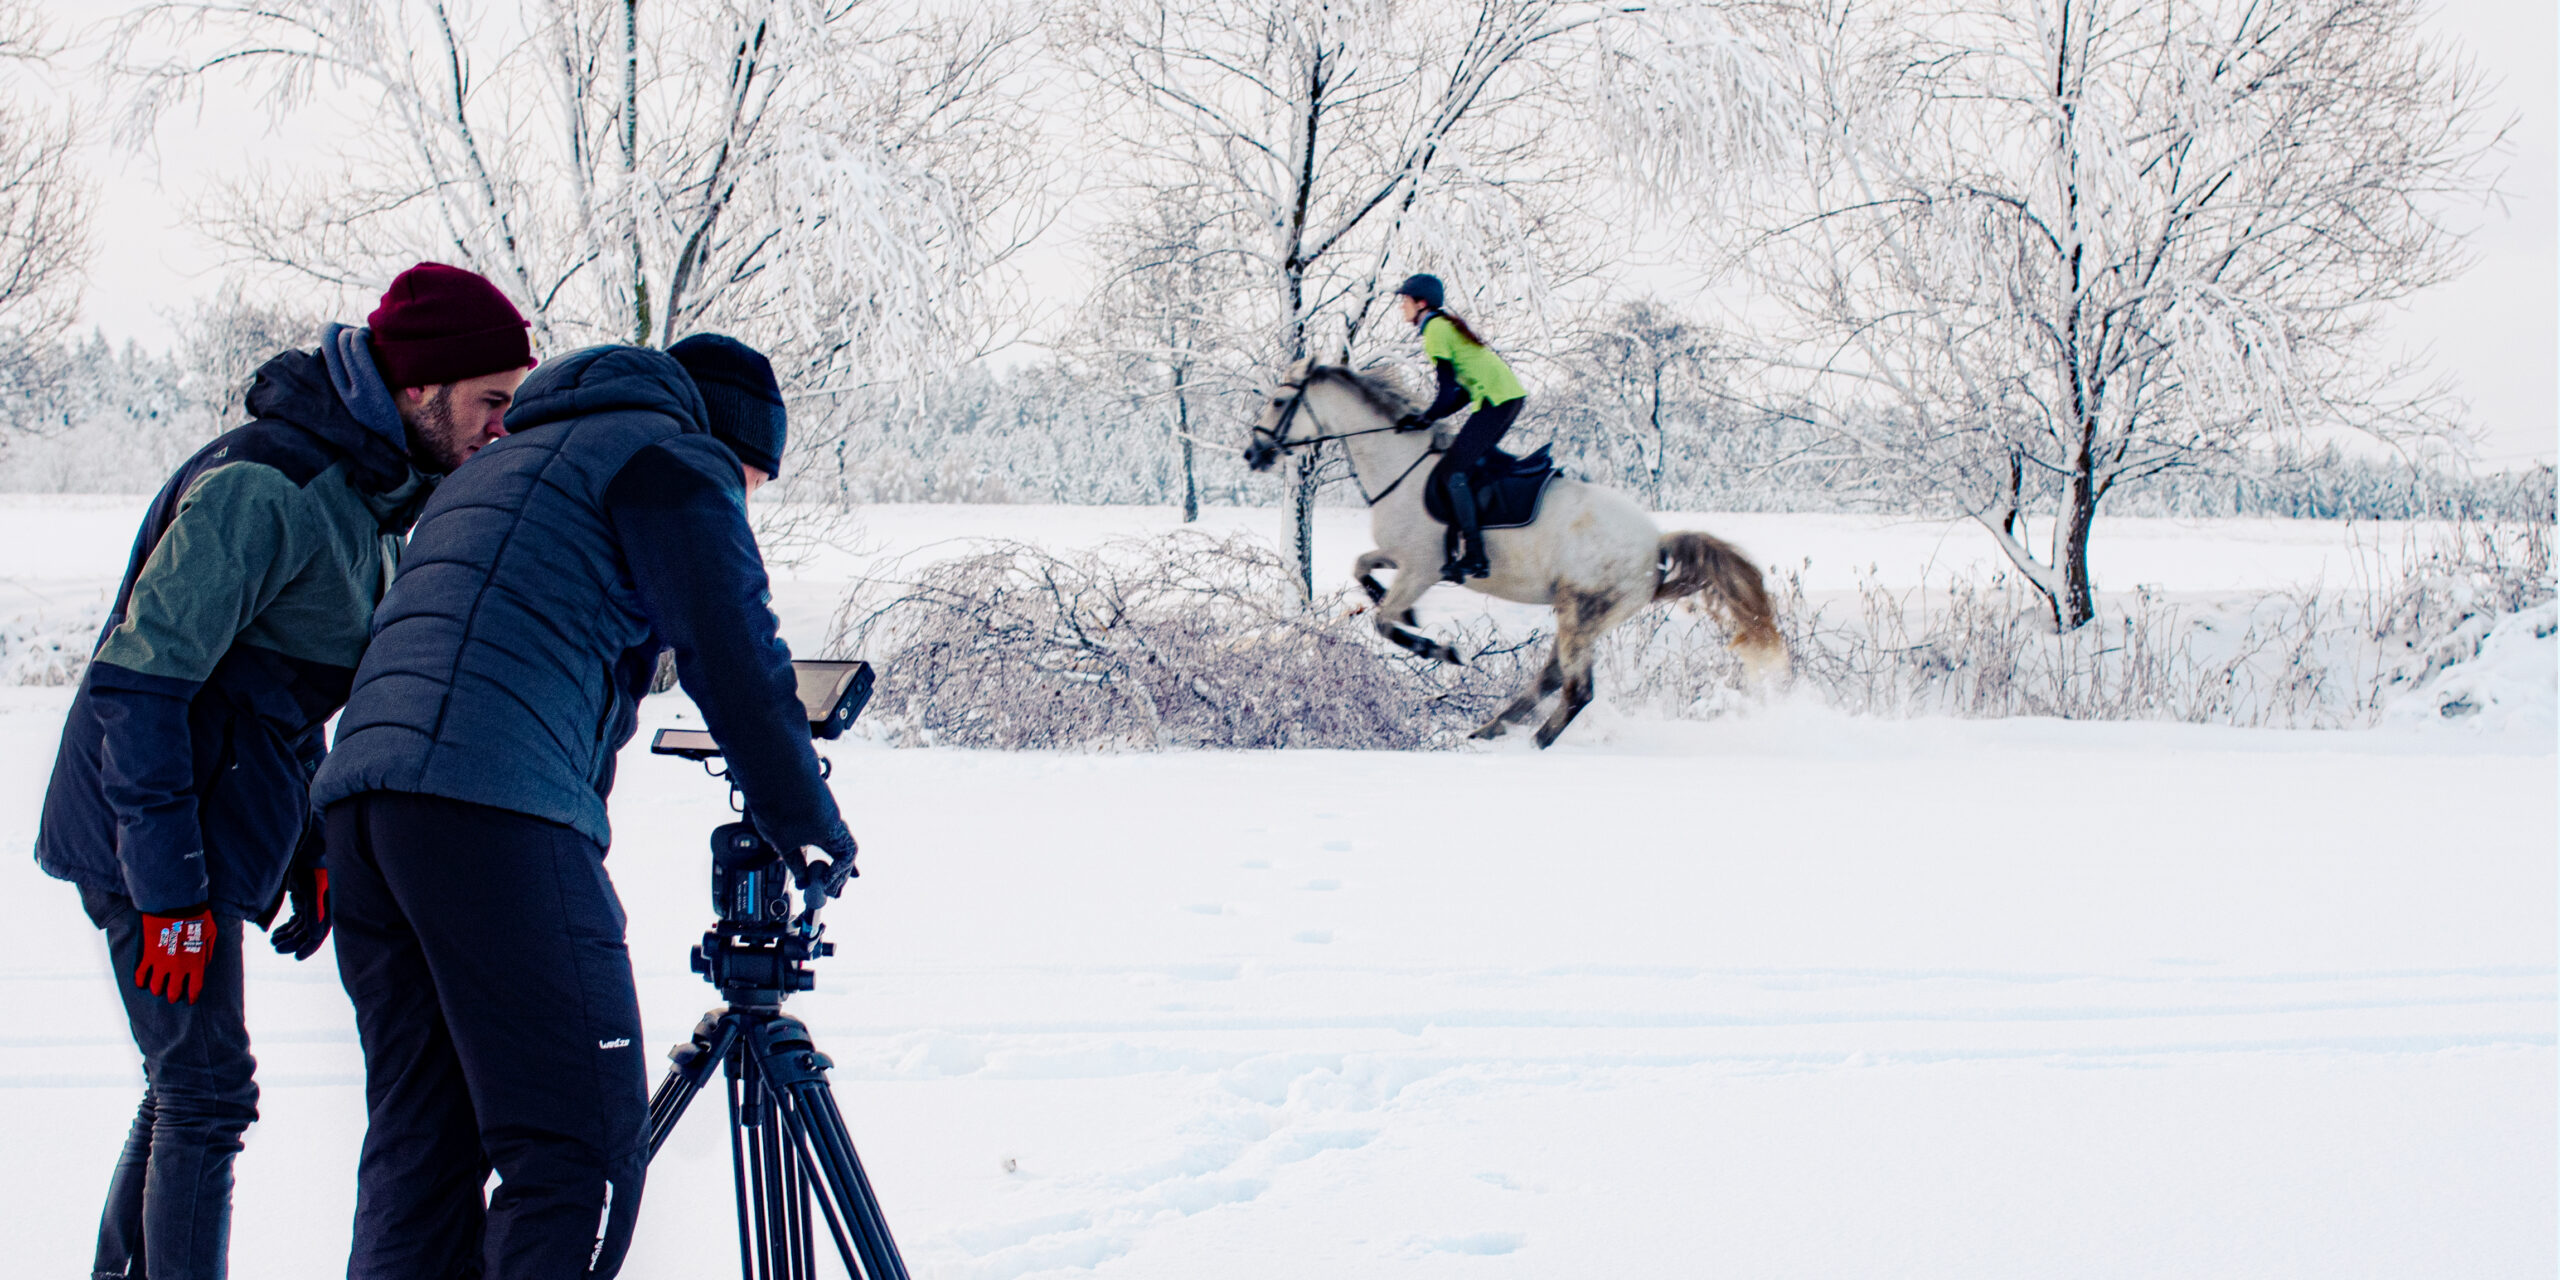 Videodreh im Schnee für die Oralchirurgie Michalik und Richter Limbach-Oberfrohna. Kameramann und Regisseur richten das Bild ein, während im Hintergrund eine Reiterin mit ihrem Pferd galoppiert.